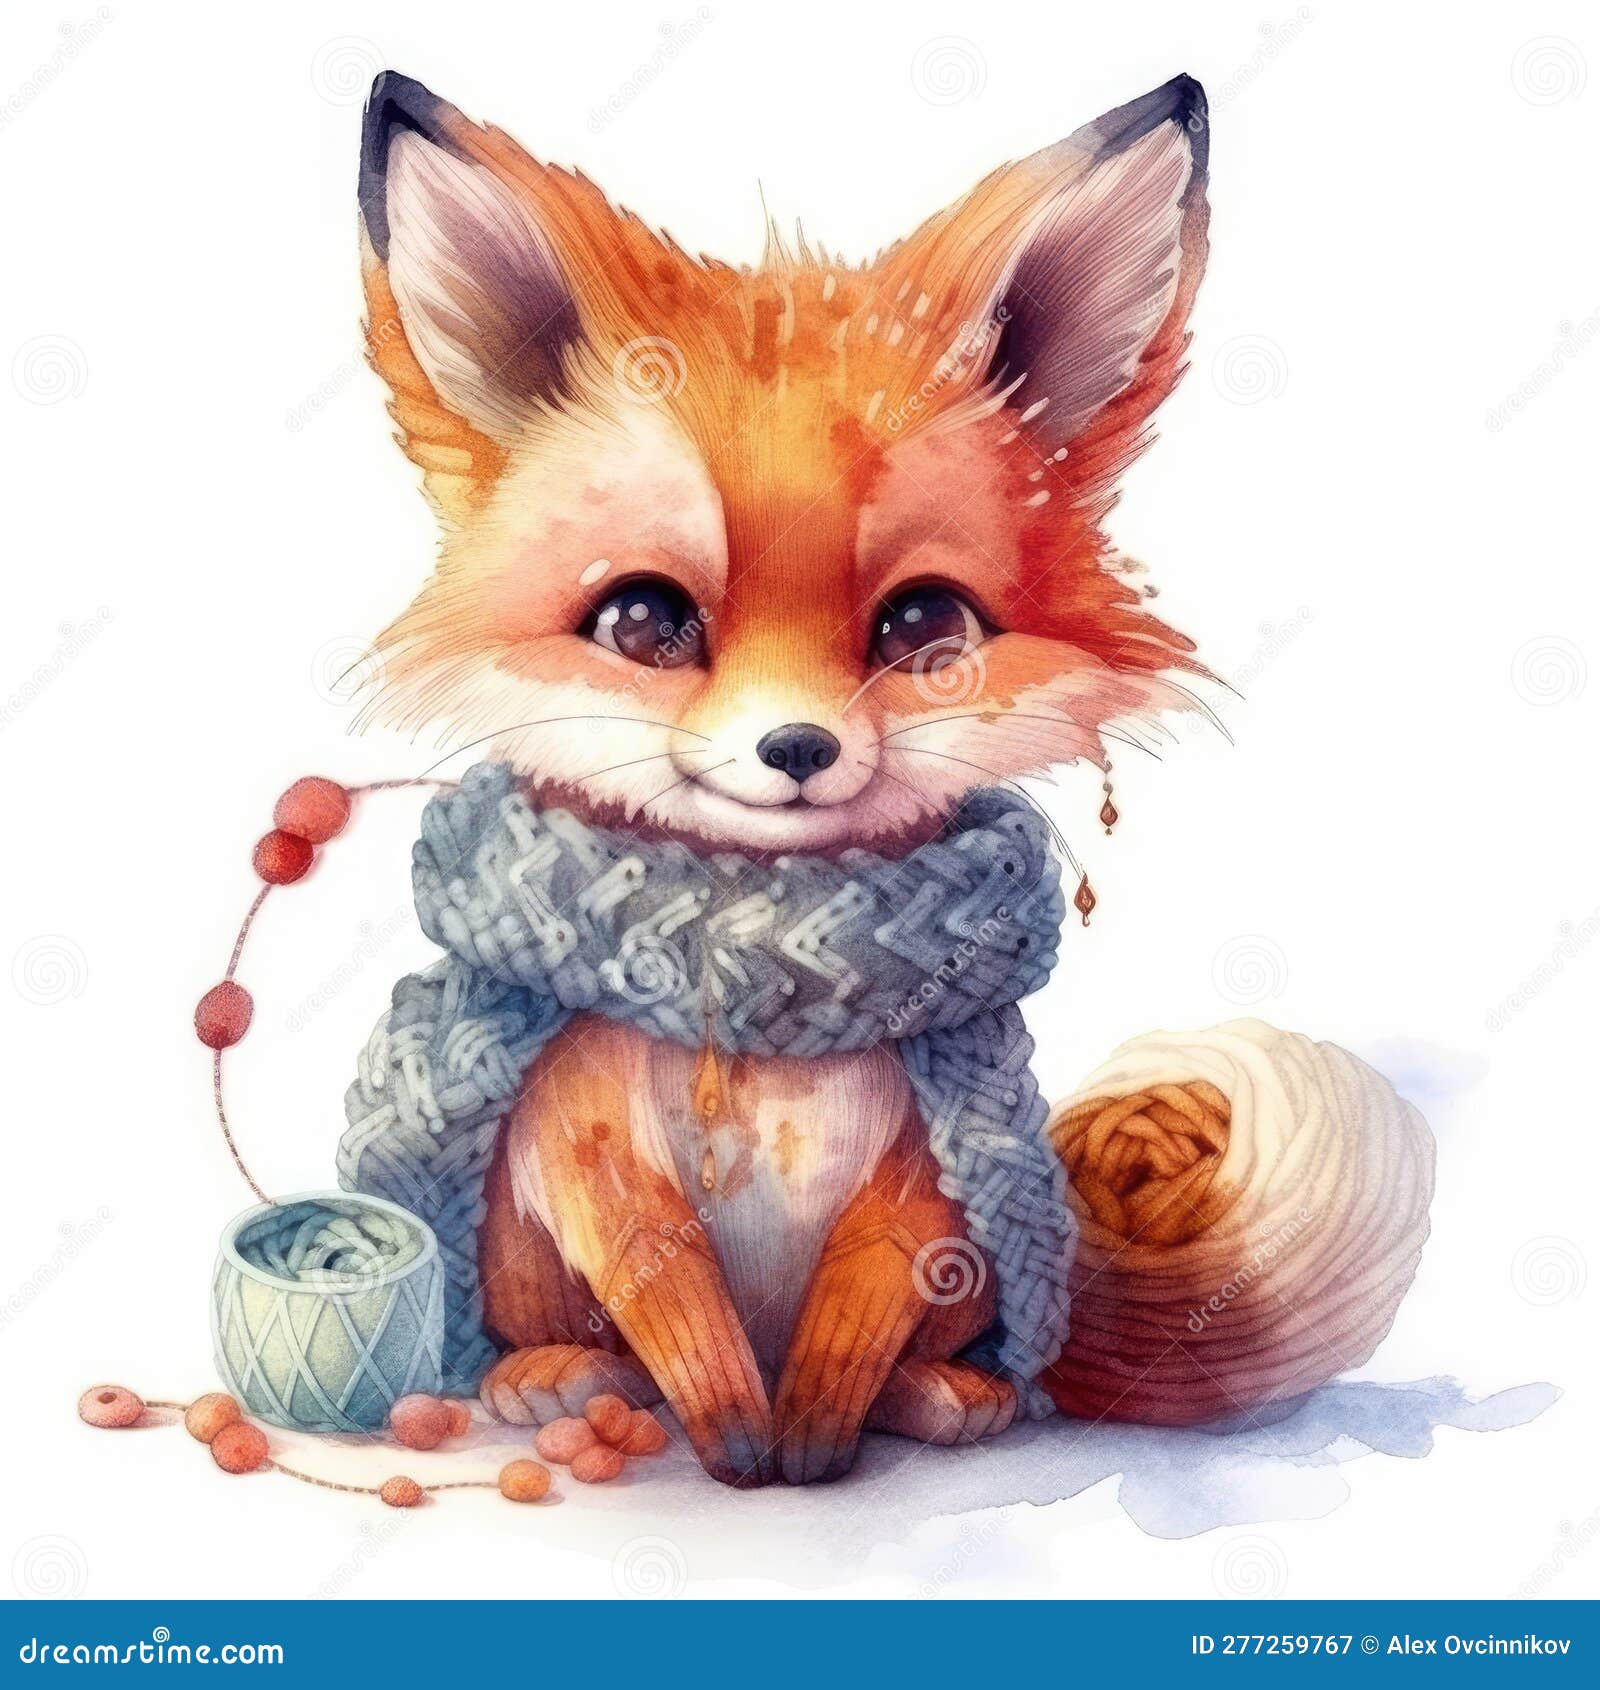 Premium Vector  Cute watercolor baby fox illustration